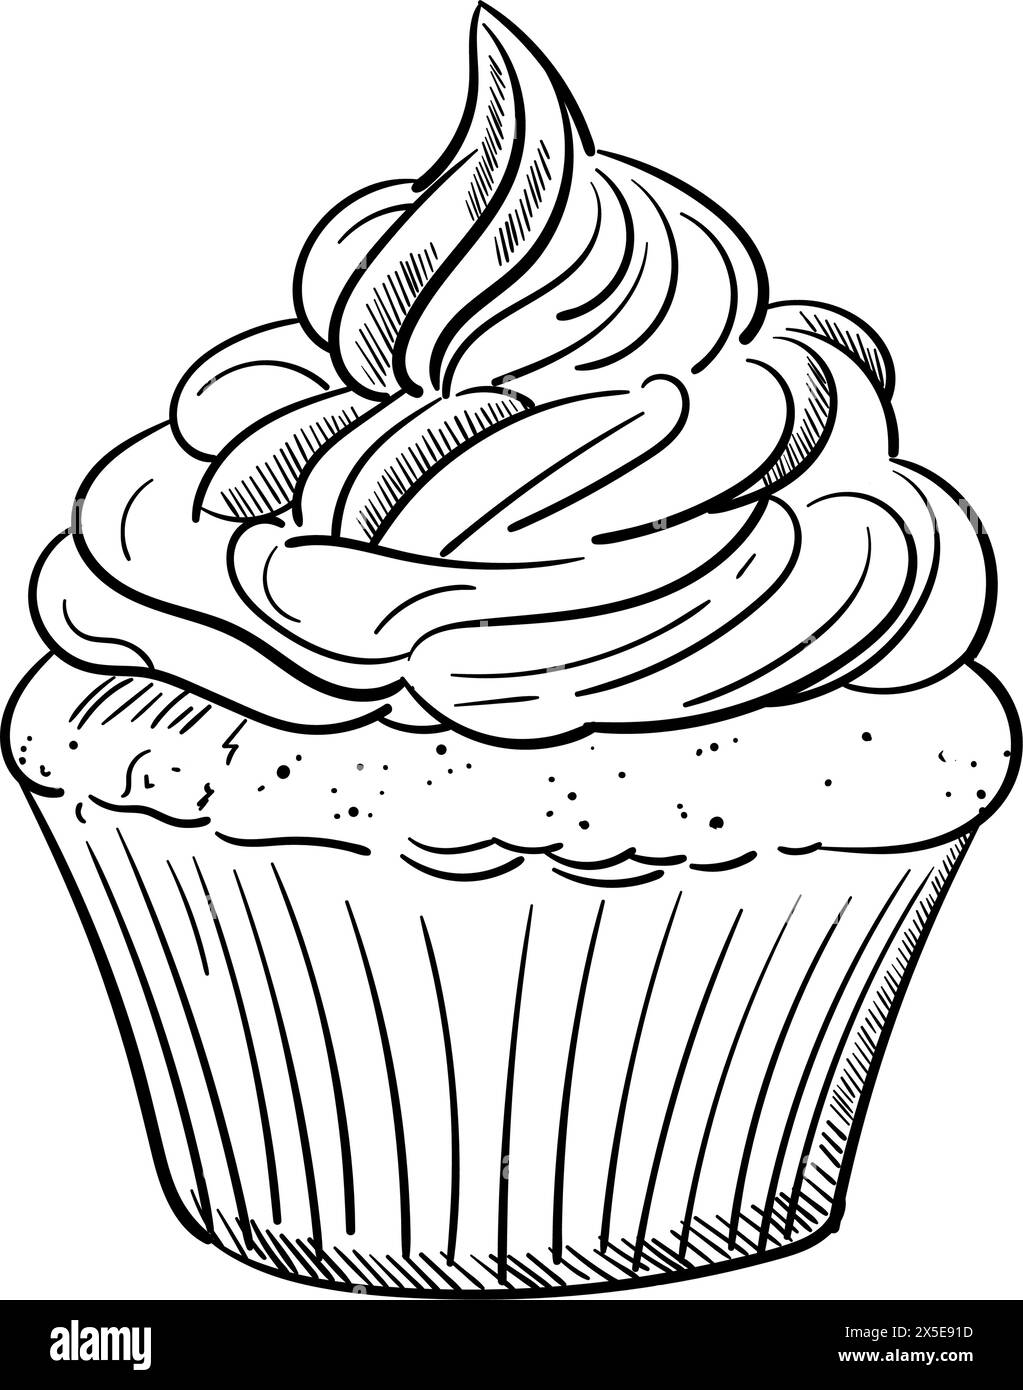 Schizzo di muffin cremoso. Torta Doodle. Disegnato a mano. Illustrazione di contorno. Per menu', caffe', ristorante, design di imballaggio. Illustrazione Vettoriale